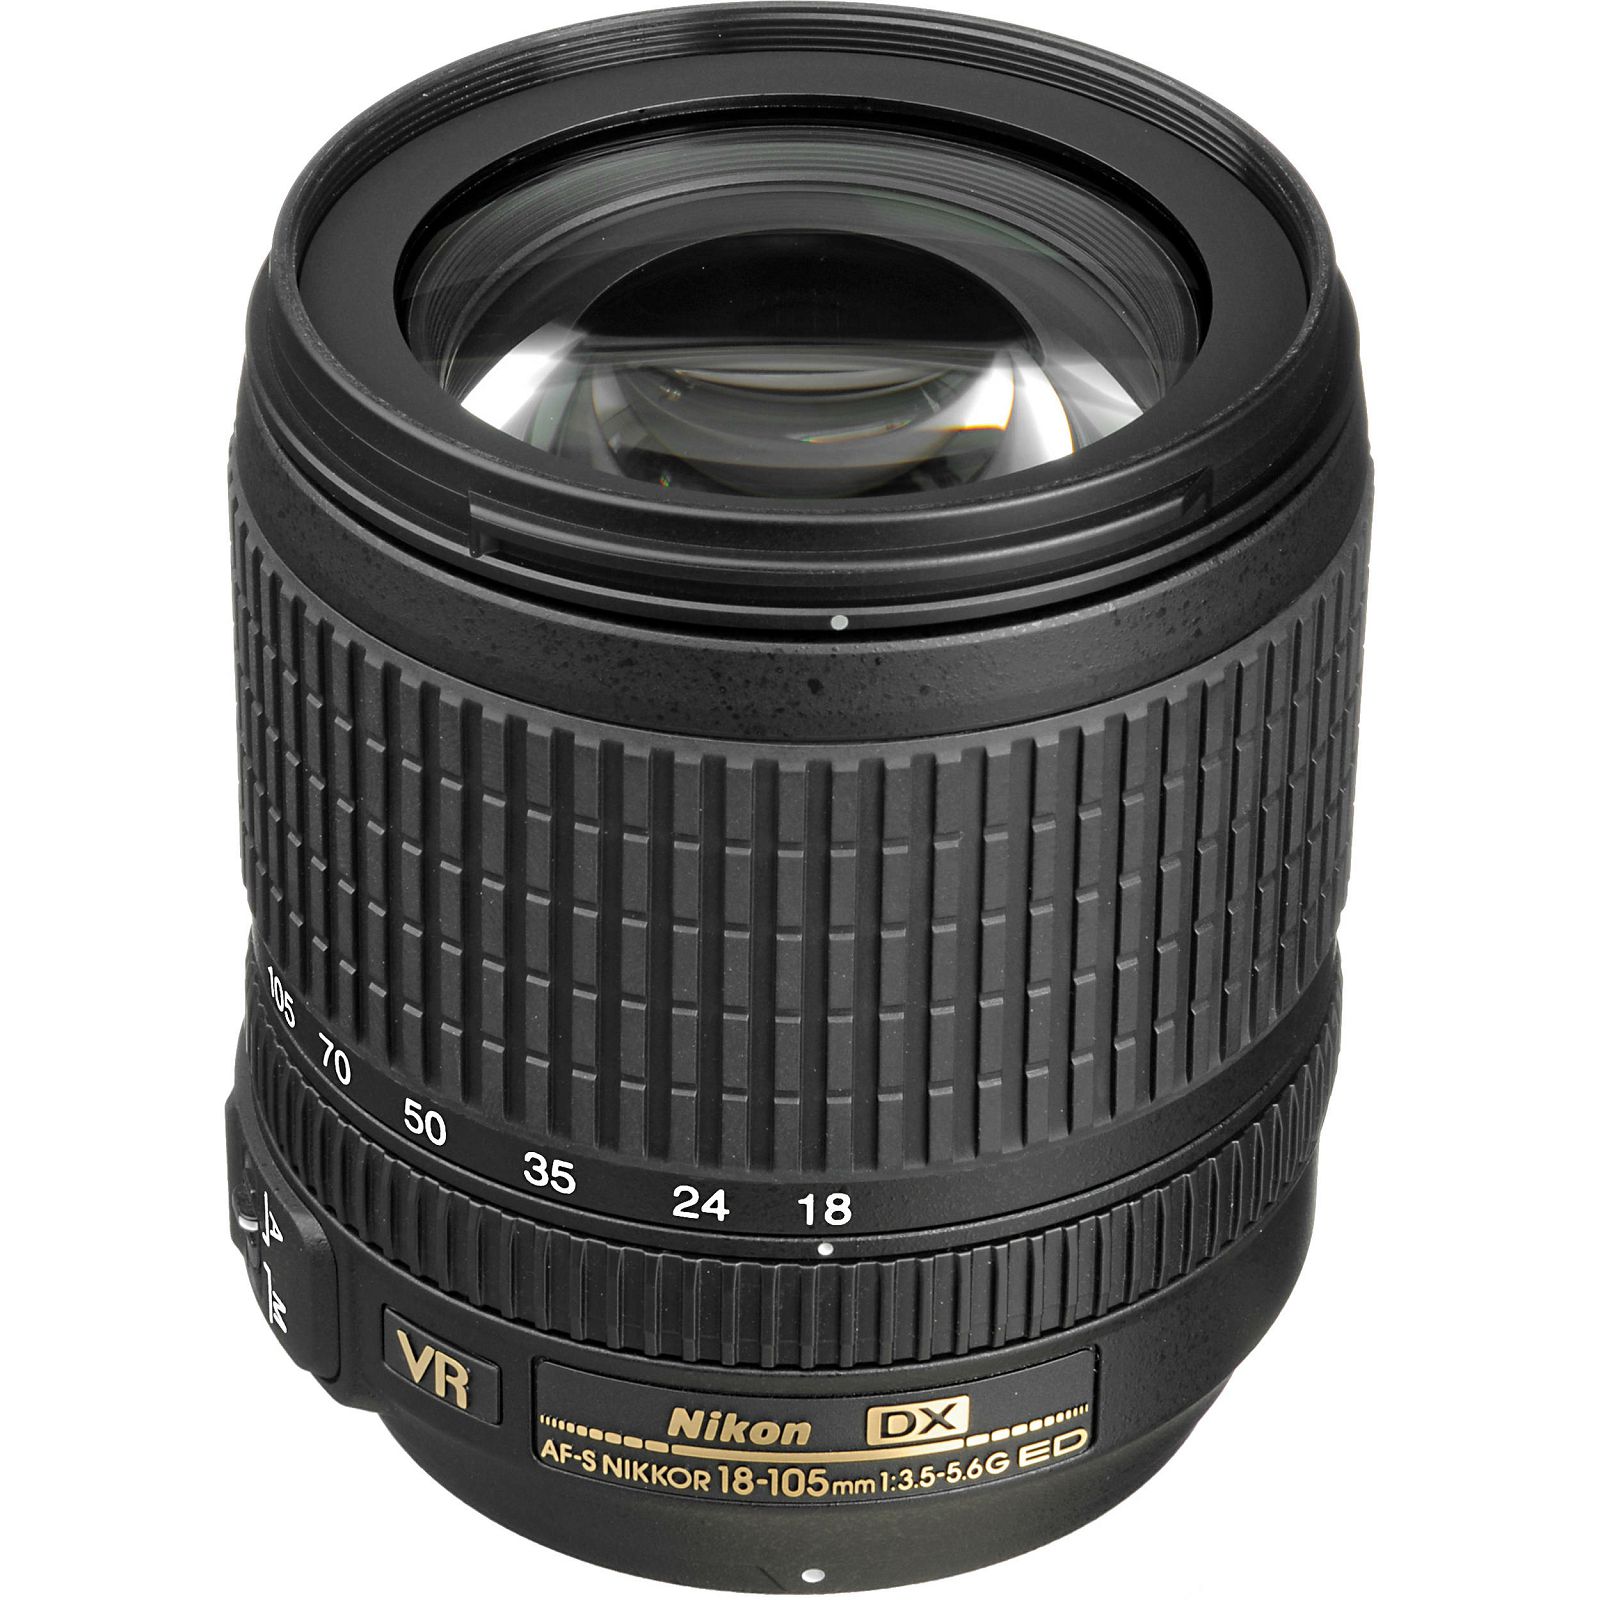 Nikon D5500 + AF 18-105 VR KIT DSLR Digitalni fotoaparat Camera with 18